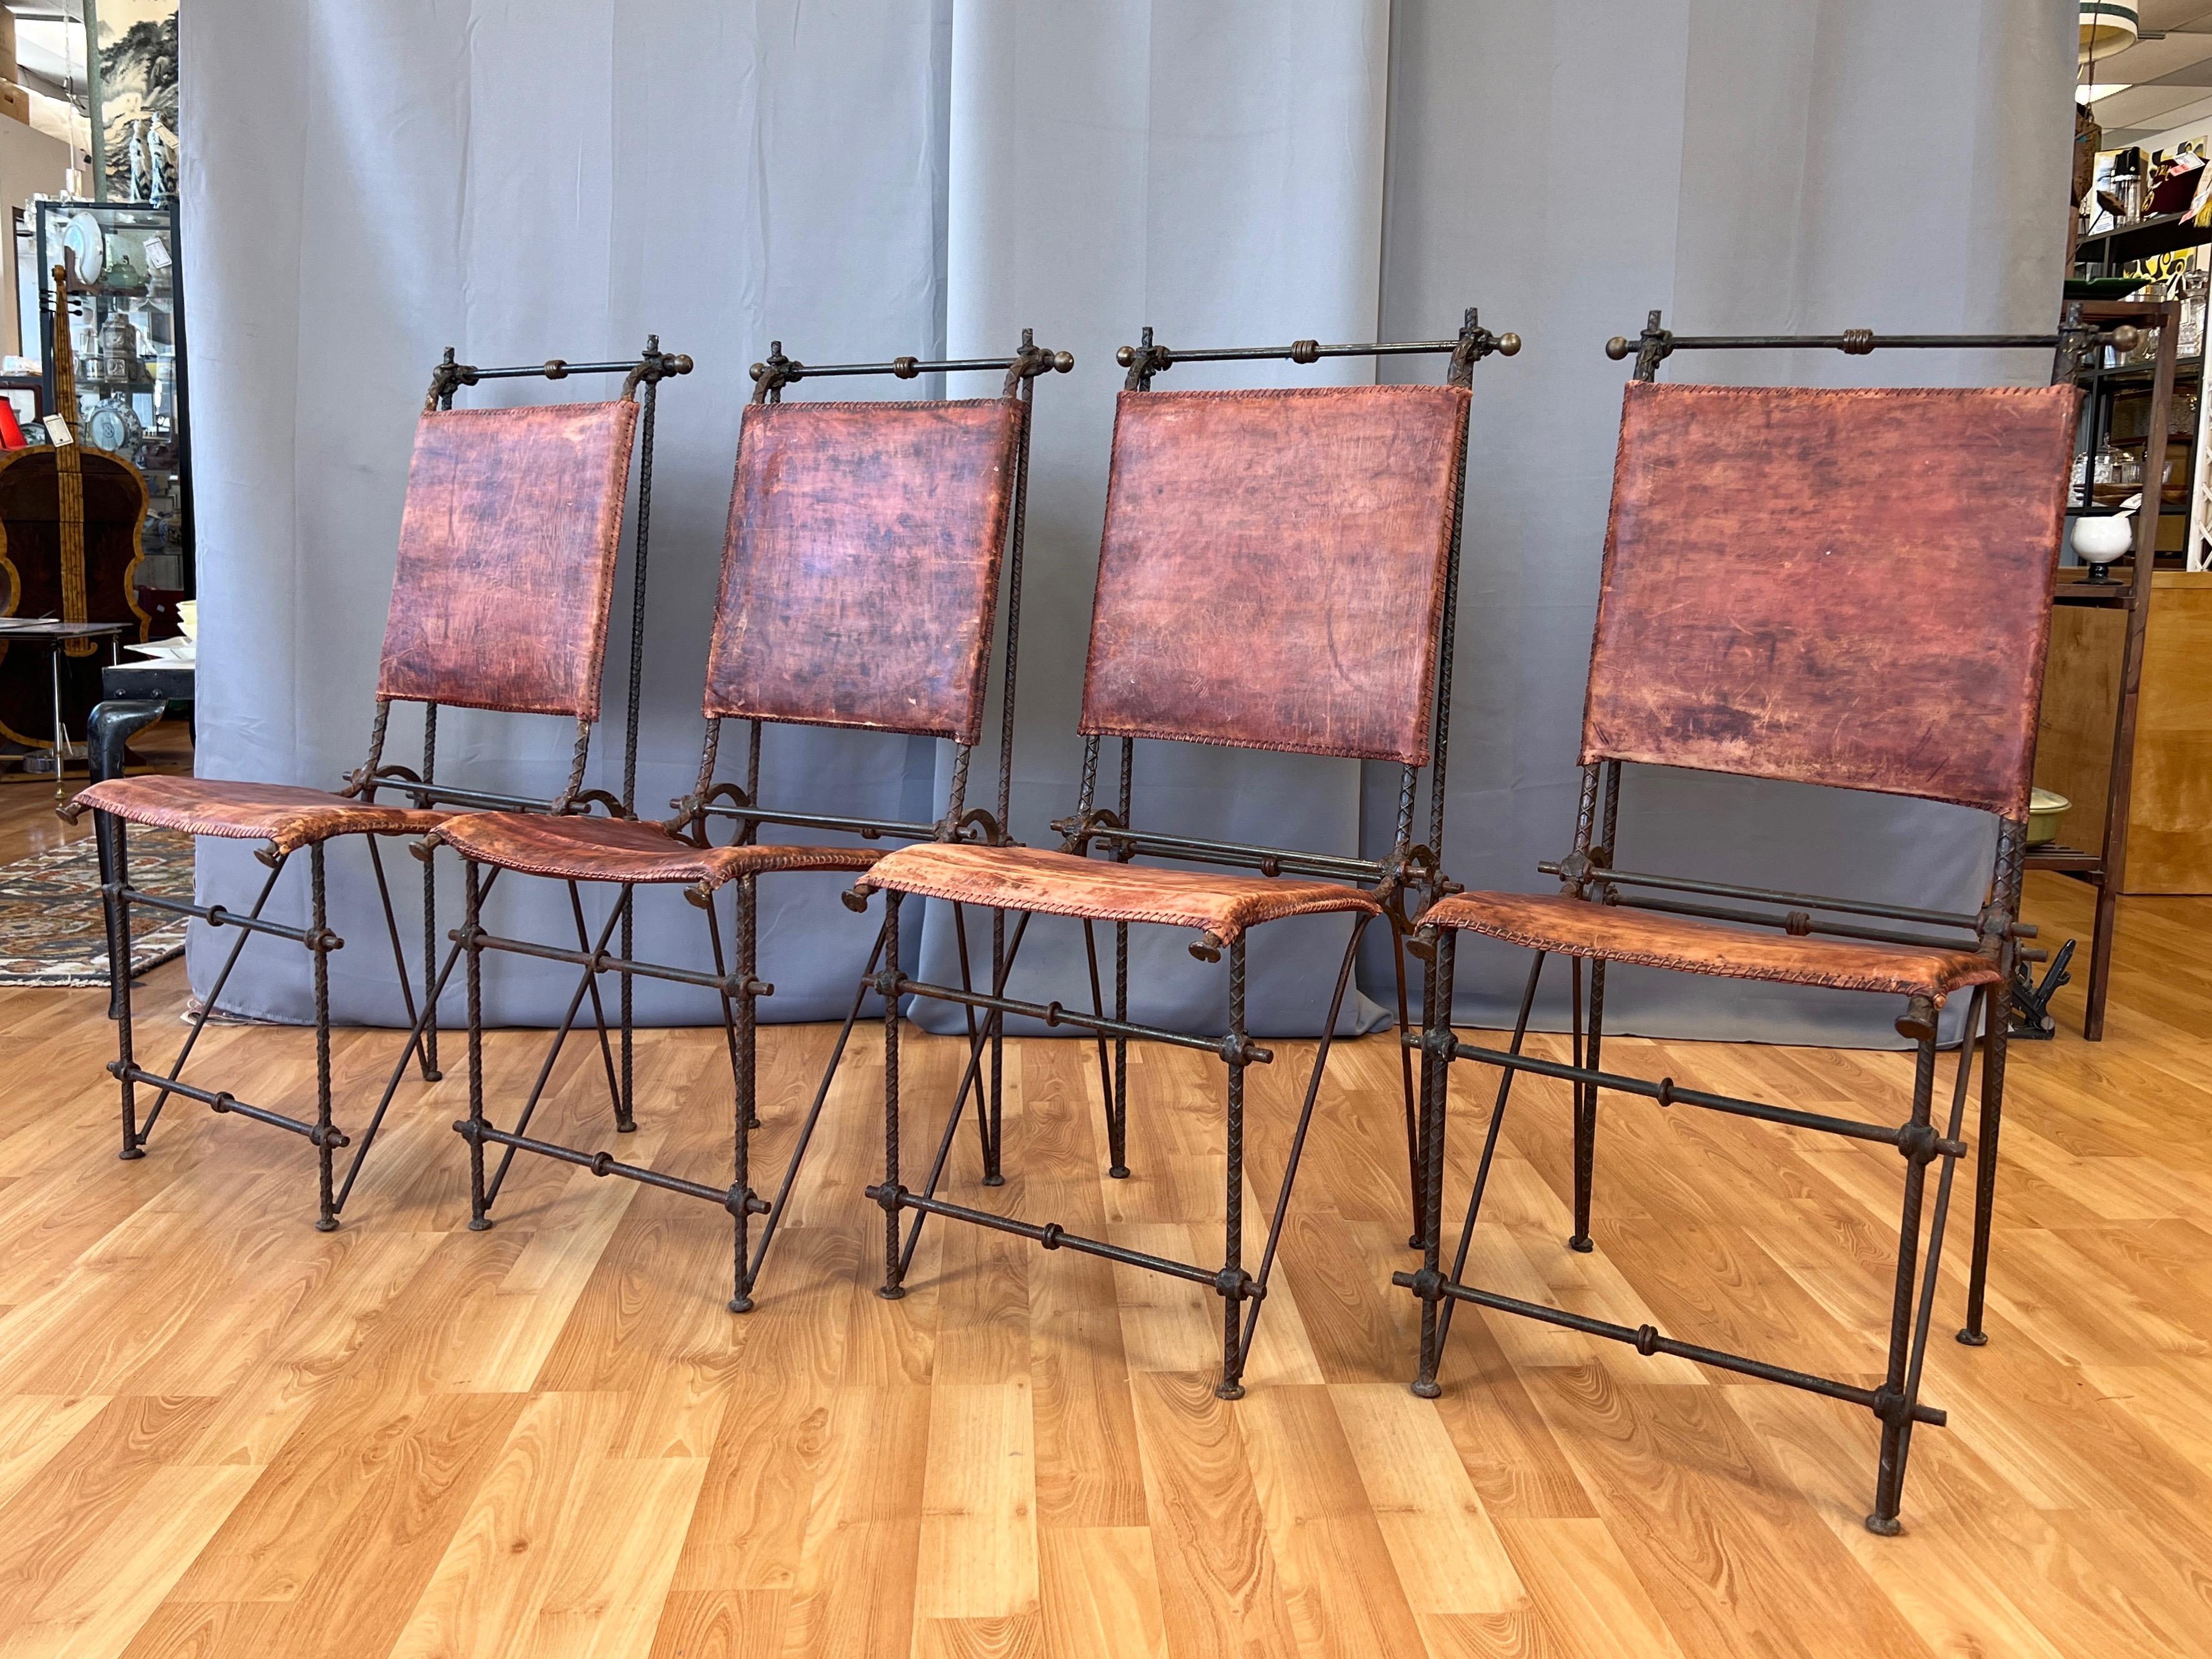 Un ensemble de quatre chaises de salle à manger en métal et cuir de style Brutalist, datant de 1980, attribuées à l'artiste et sculpteur israélien renommé Ilana Goor (né en 1936).

Ils sont remarquables et uniques par leur design, leurs matériaux et